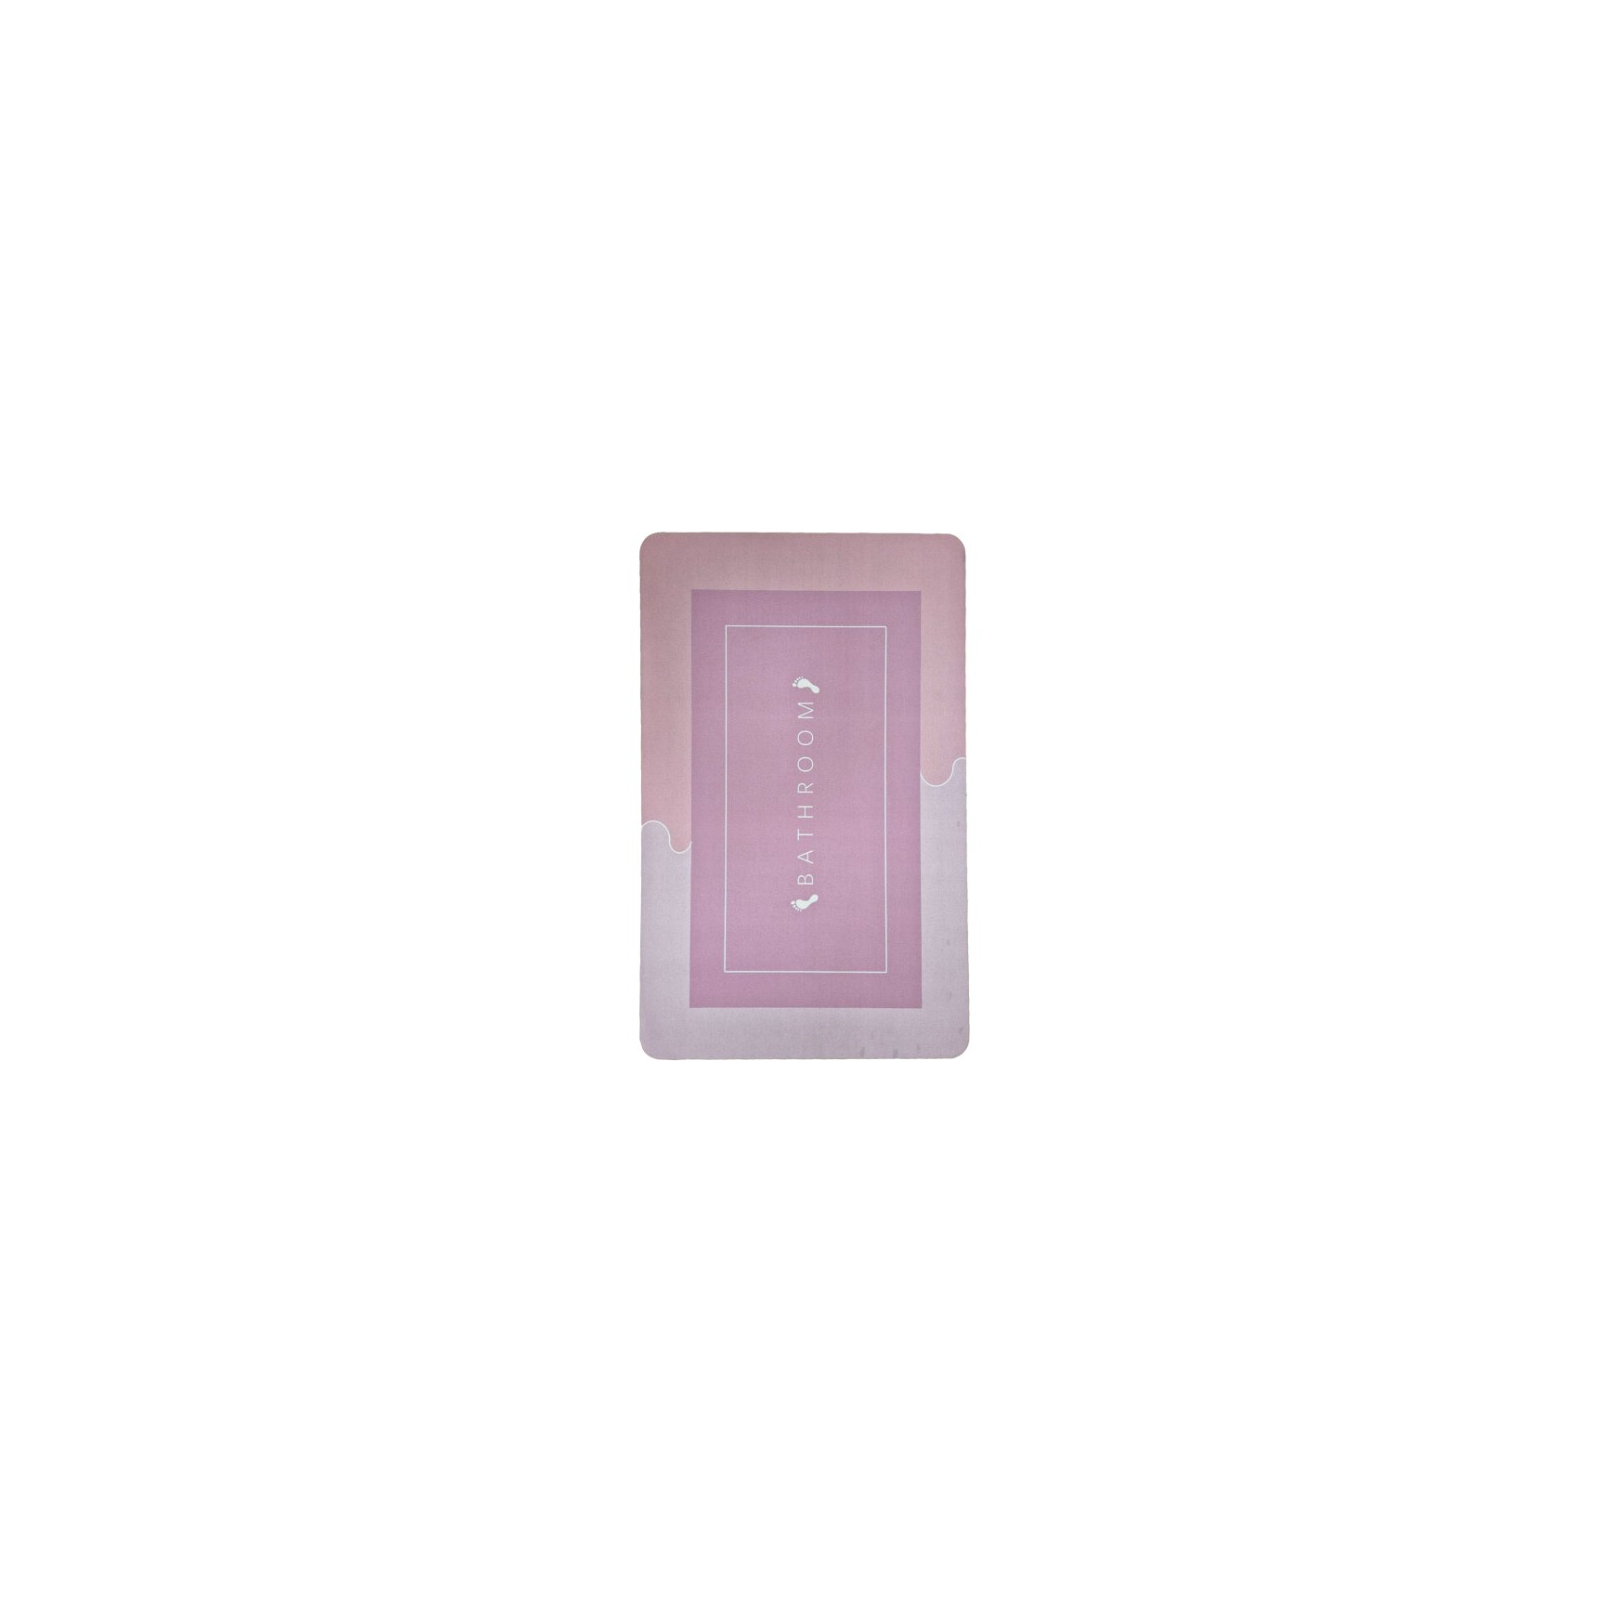 Коврик для ванной Stenson суперпоглощающий 40 х 60 см прямоугольный фиолетовый (R30937 violet) изображение 2